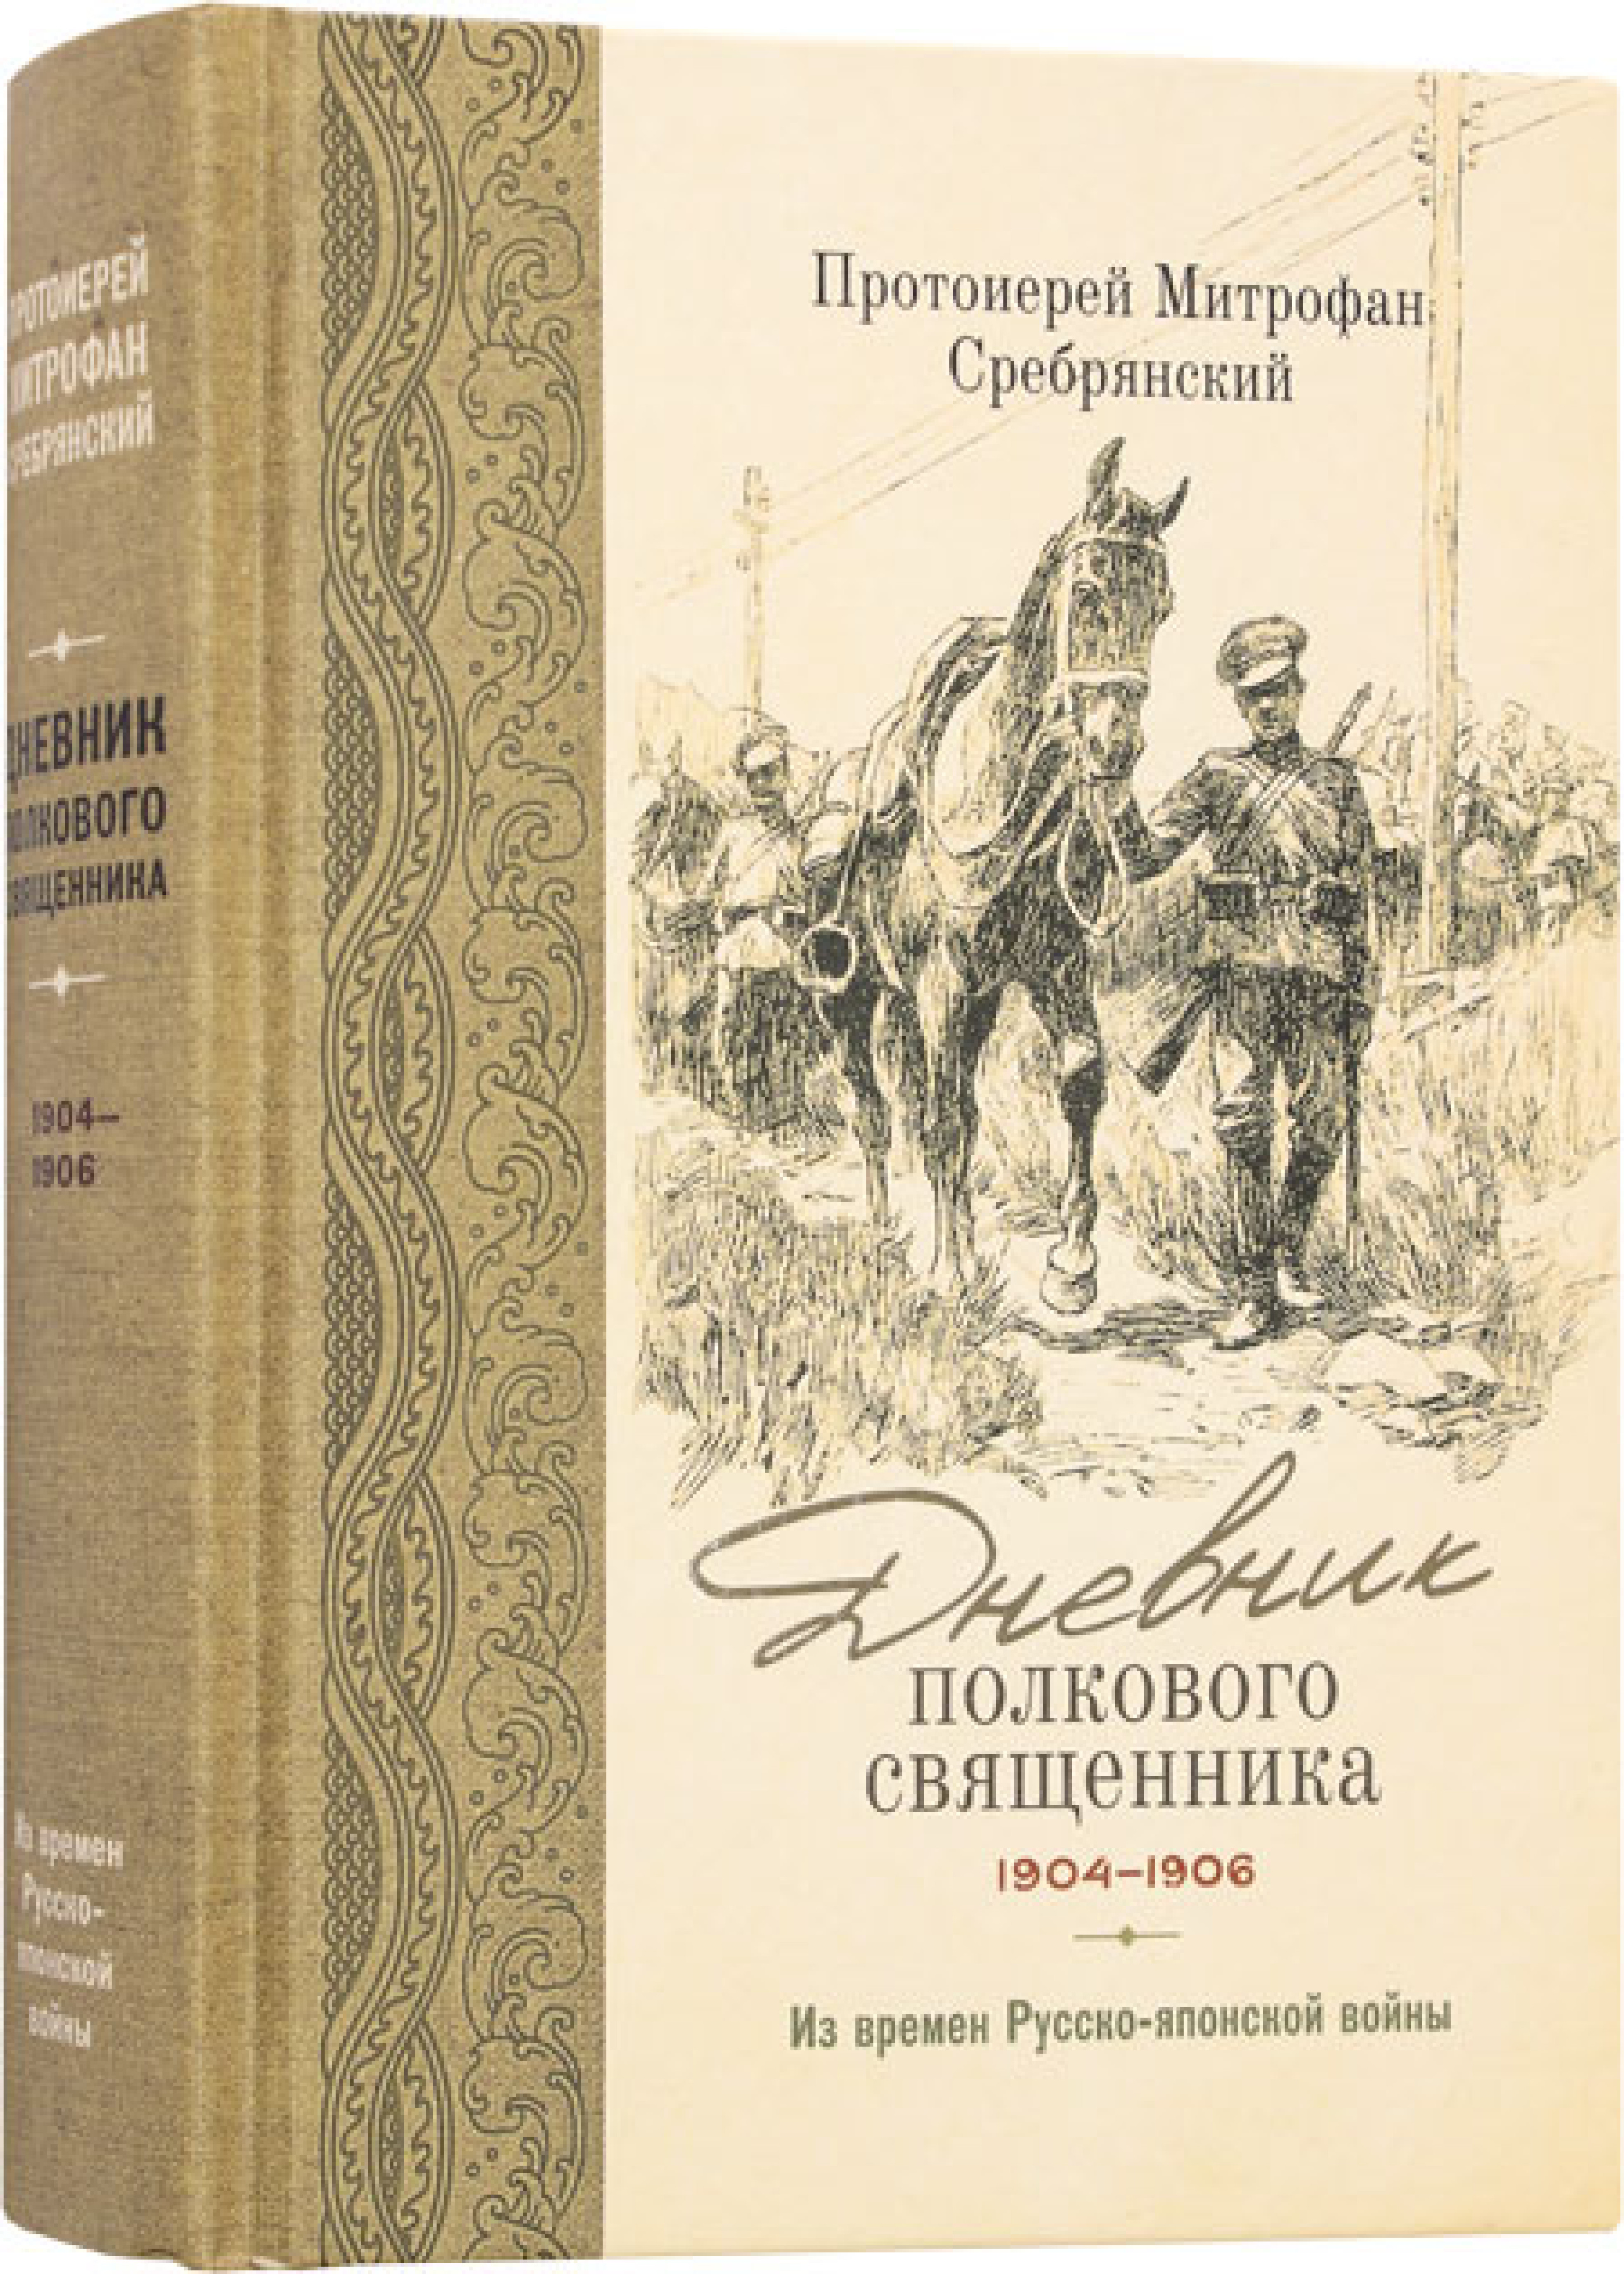 Дневник полкового священника 1904–1906 гг